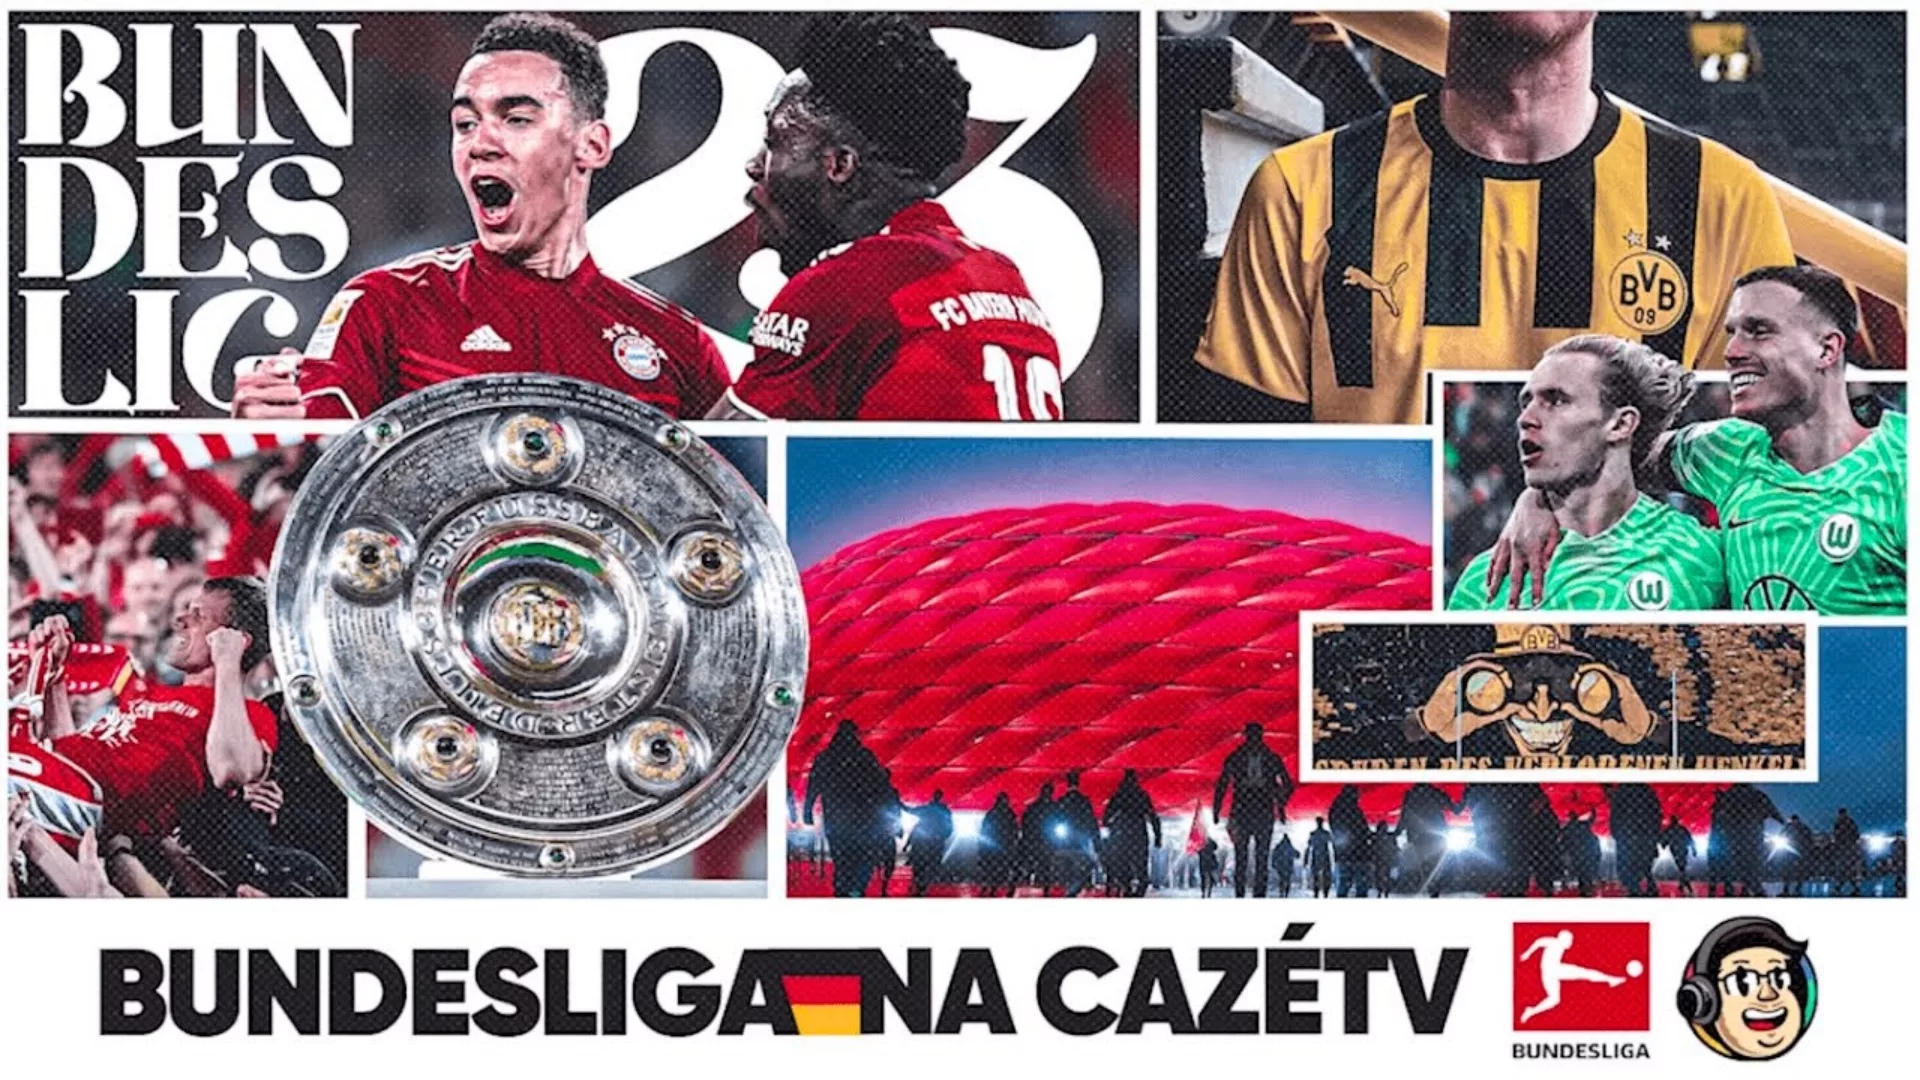 CazéTV e Bundesliga fazem transmissão em formato vertical no TikTok